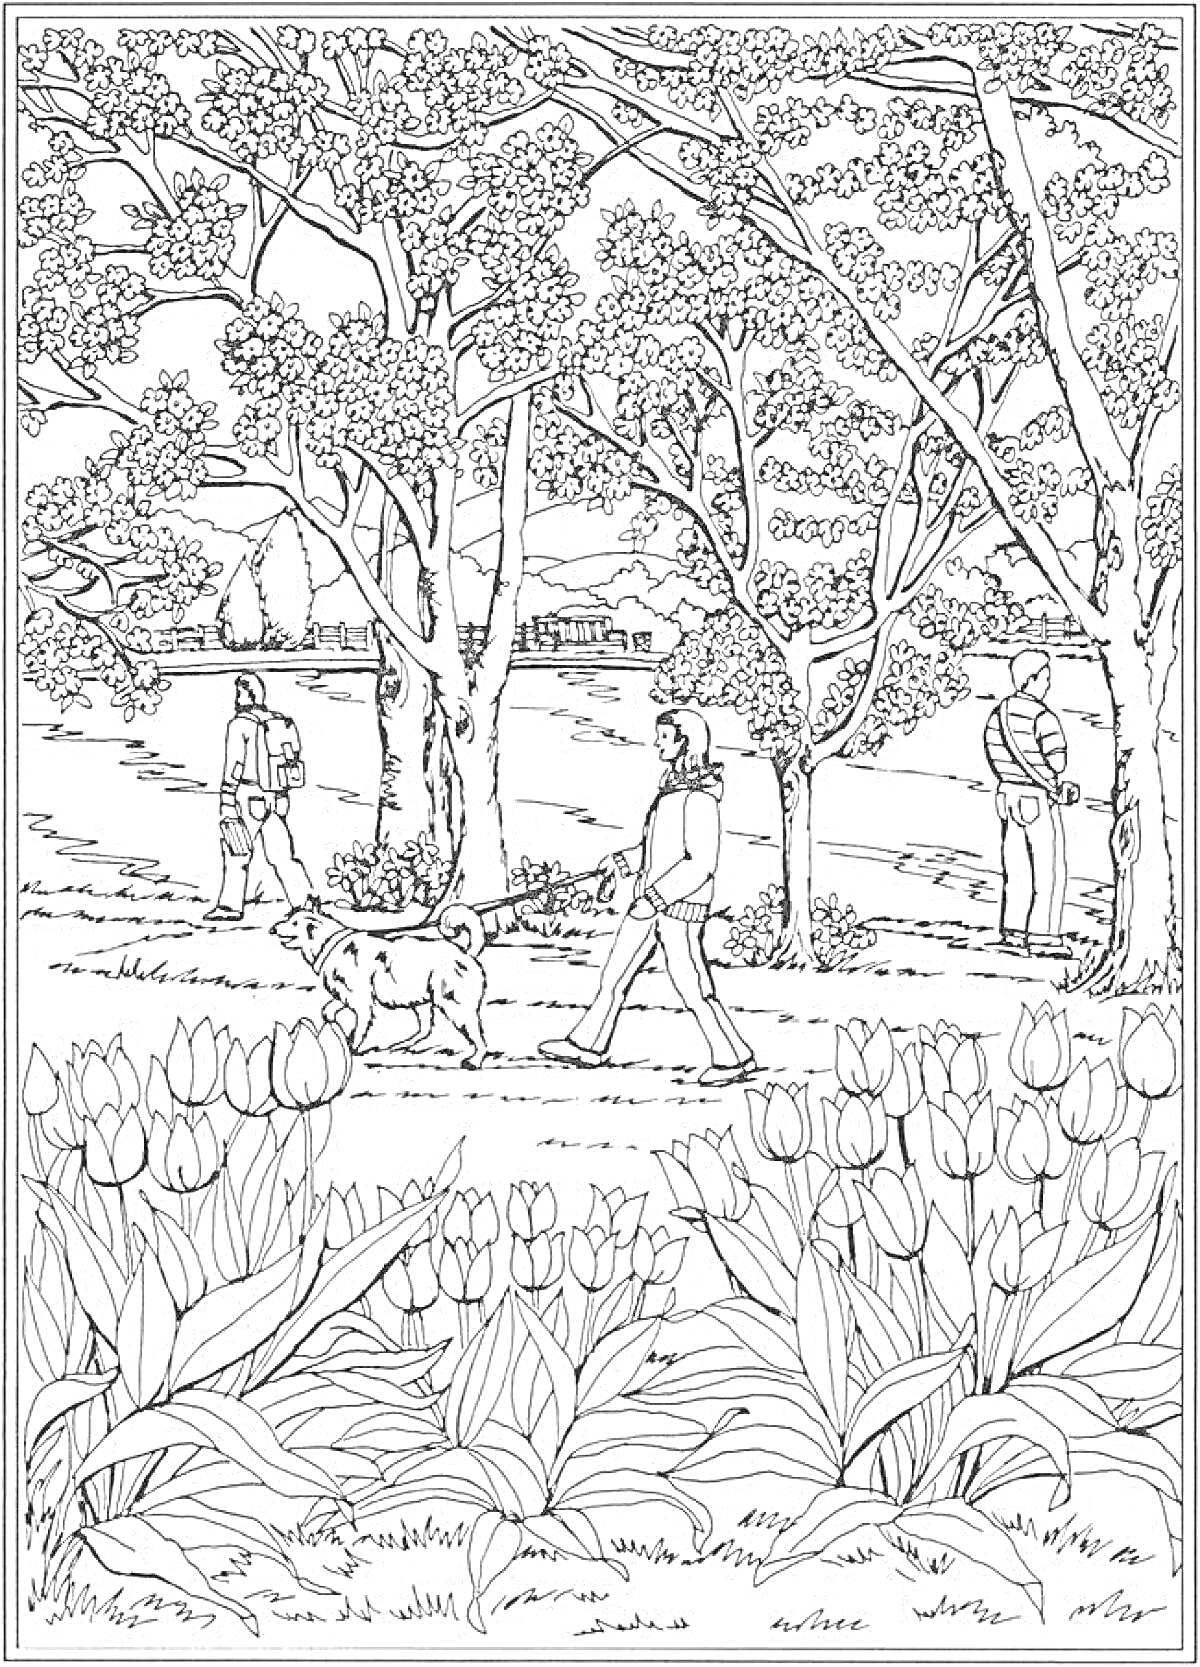 Раскраска Прогулка по парку с тюльпанами, деревьями и тремя людьми с собакой на переднем плане